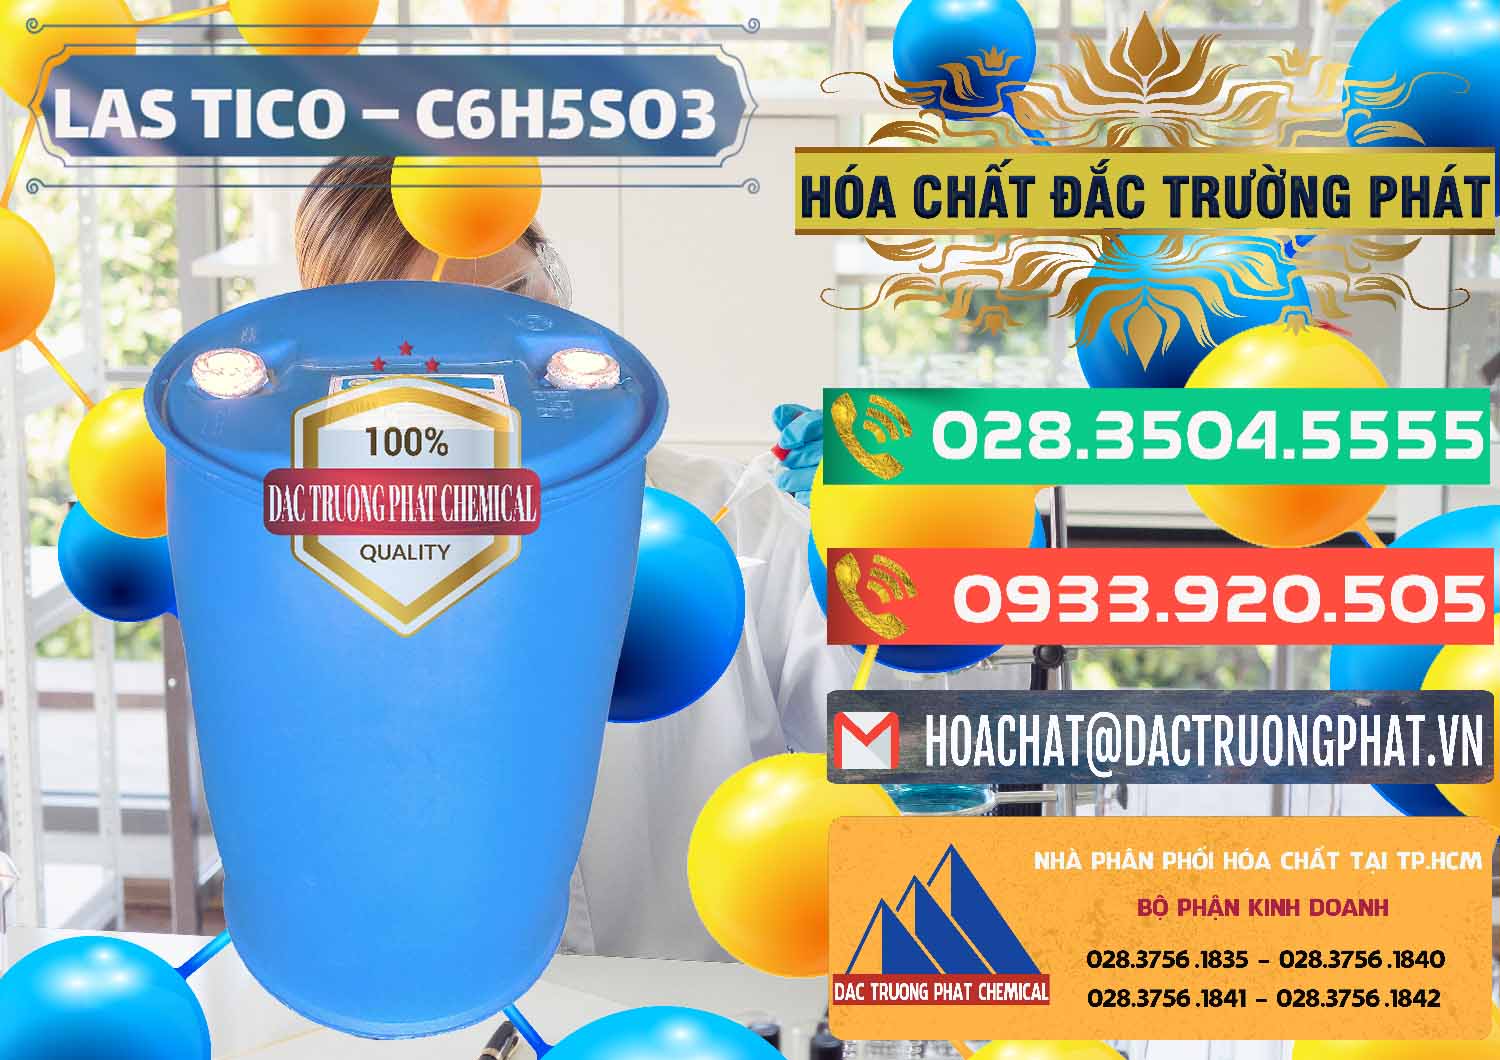 Cty chuyên cung cấp ( bán ) Chất tạo bọt Las H Tico Việt Nam - 0190 - Nơi bán và phân phối hóa chất tại TP.HCM - congtyhoachat.com.vn